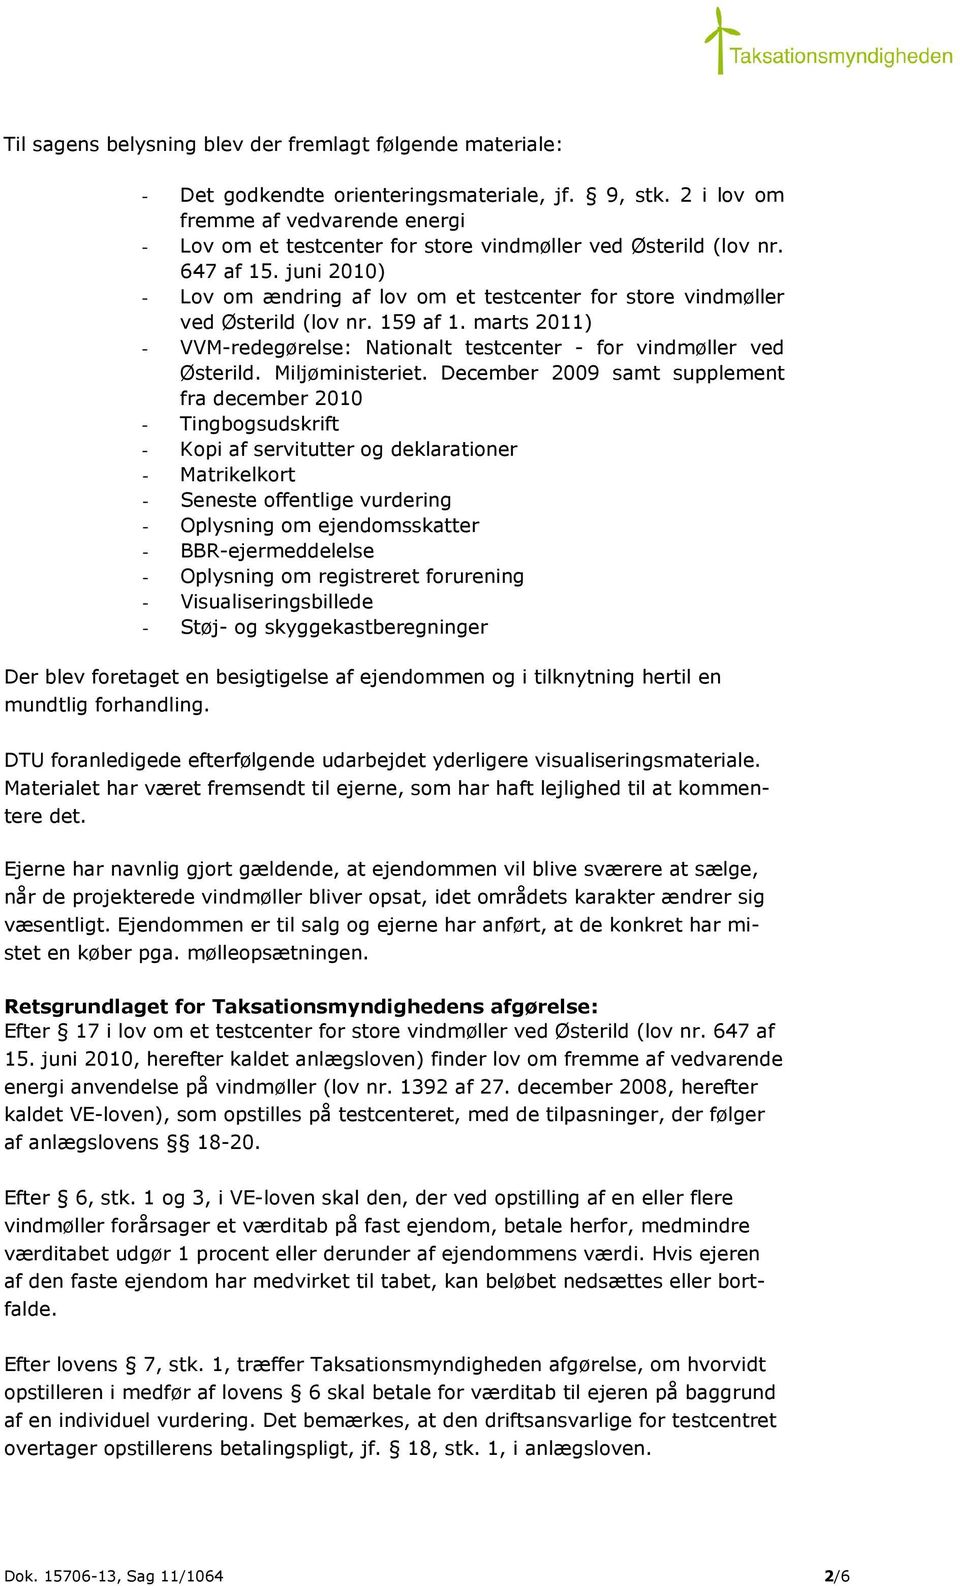 juni 2010) - Lov om ændring af lov om et testcenter for store vindmøller ved Østerild (lov nr. 159 af 1. marts 2011) - VVM-redegørelse: Nationalt testcenter - for vindmøller ved Østerild.